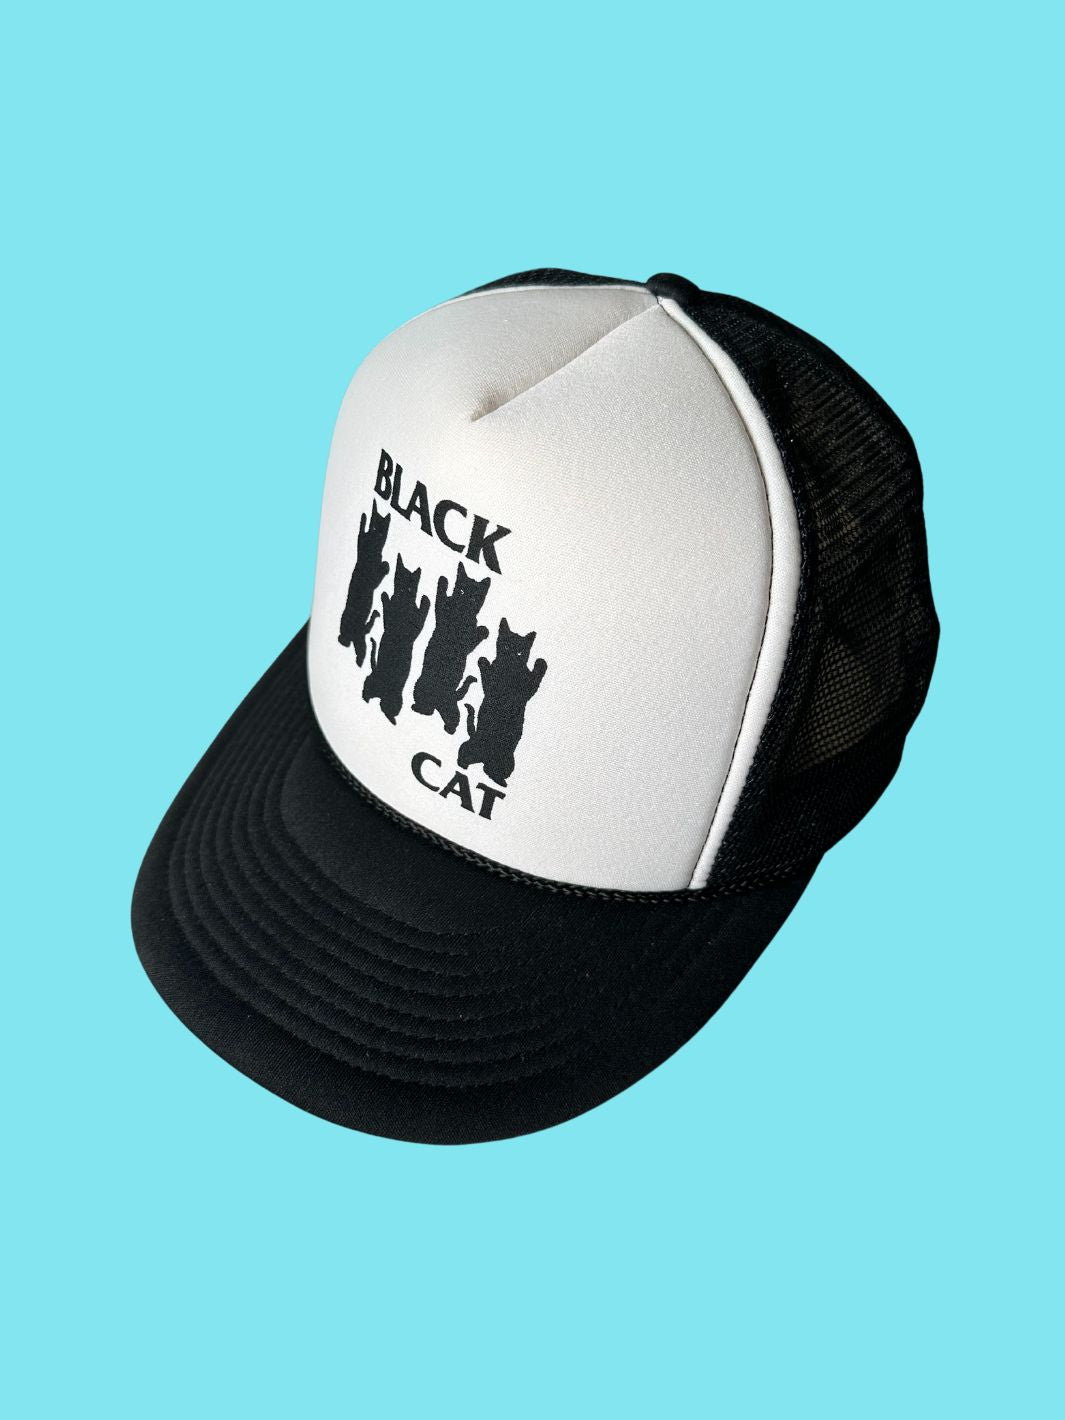 Black Cat Mesh Hat